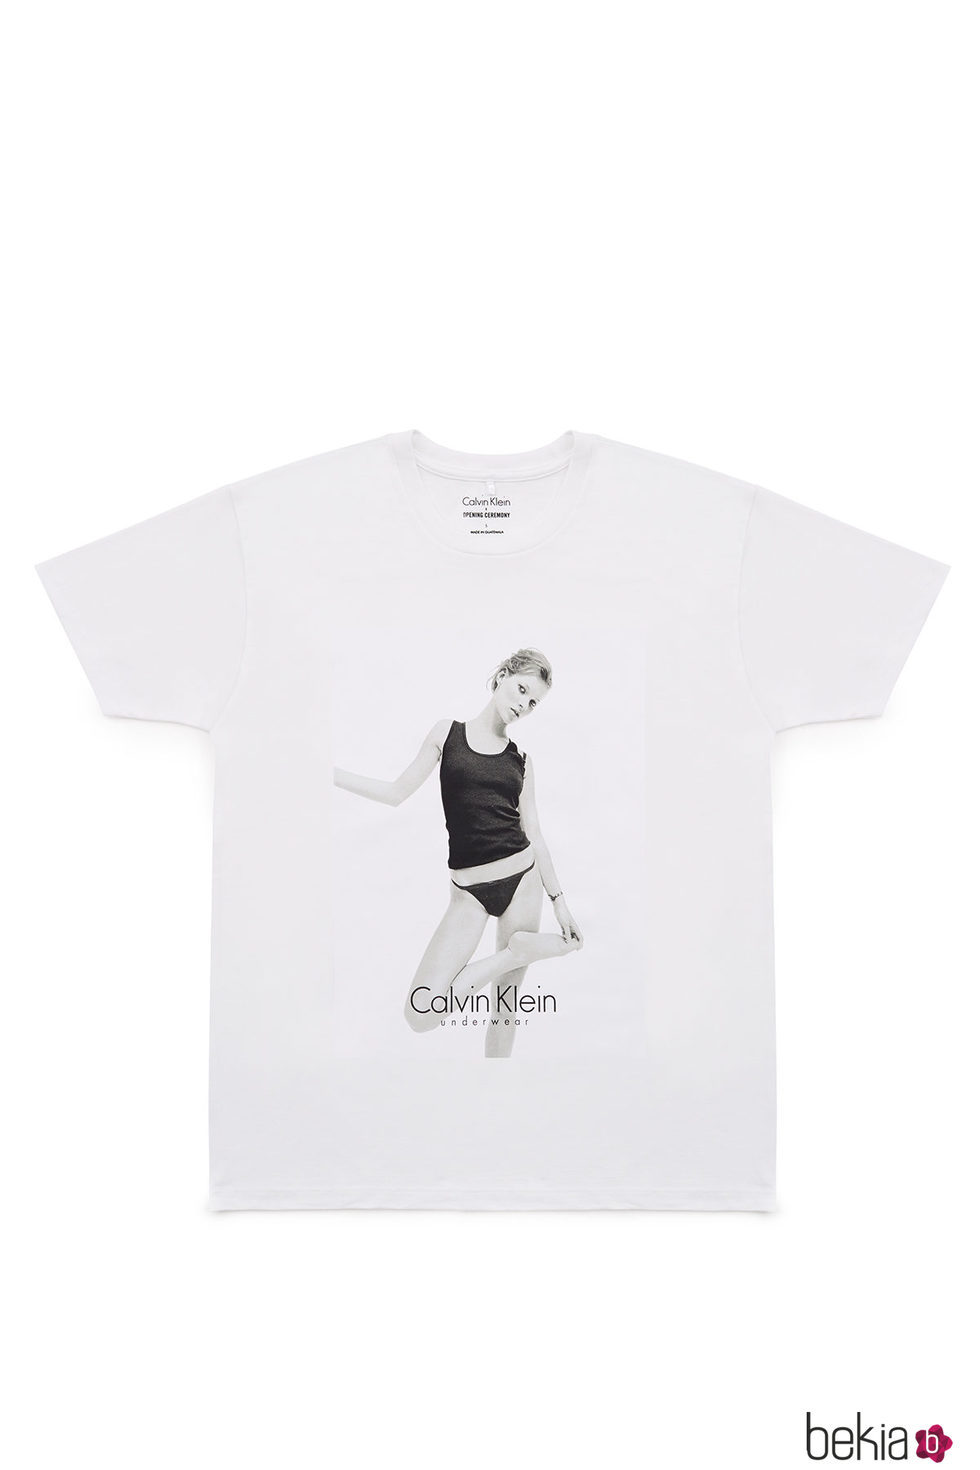 Camiseta solidaria de Kate Moss para Calvin Klein y Opening Ceremony